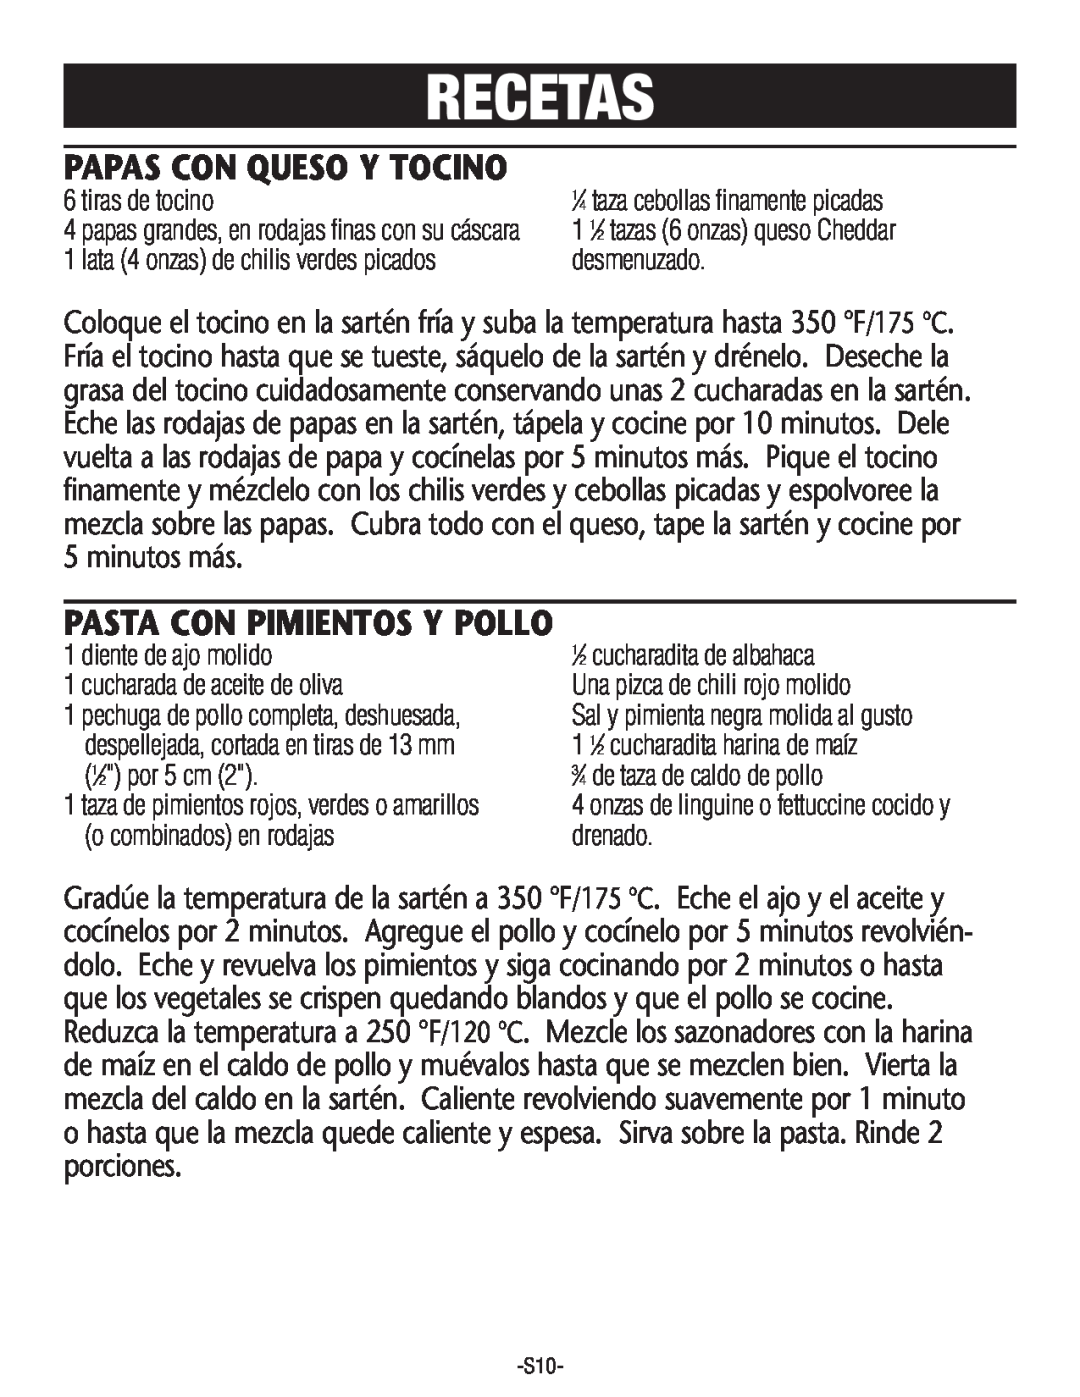 Rival S160 Recetas, Papas Con Queso Y Tocino, Pasta Con Pimientos Y Pollo, tiras de tocino, desmenuzado, 1⁄2 por 5 cm 